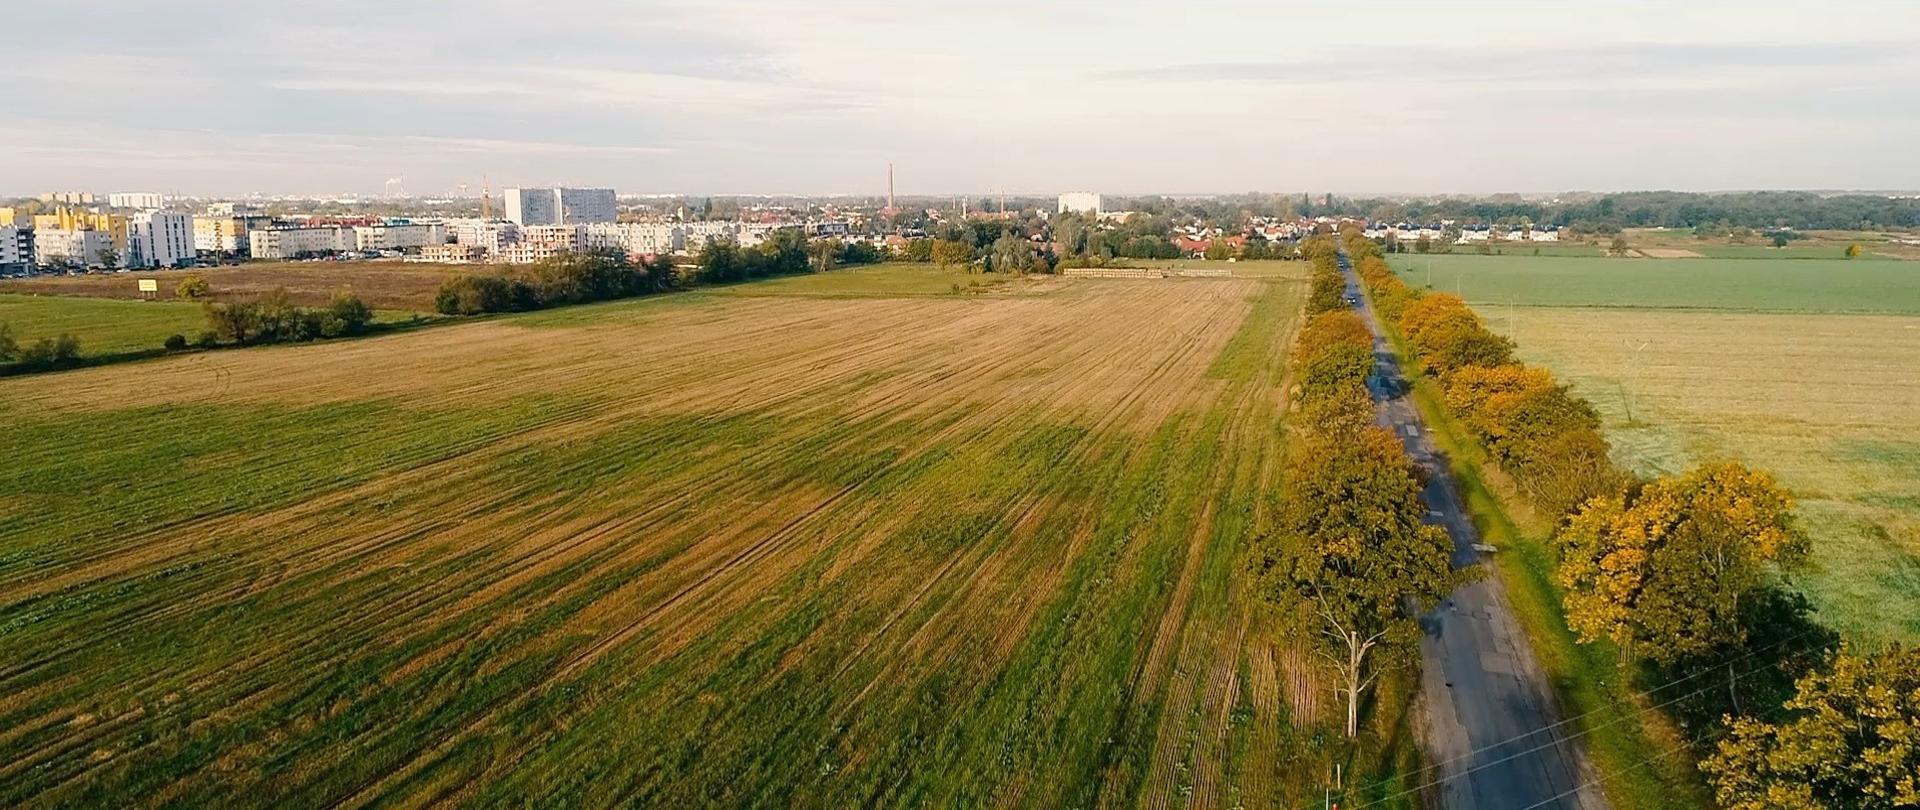 widok w stronę Wrocławia, na pierwszym planie drzewa i pola